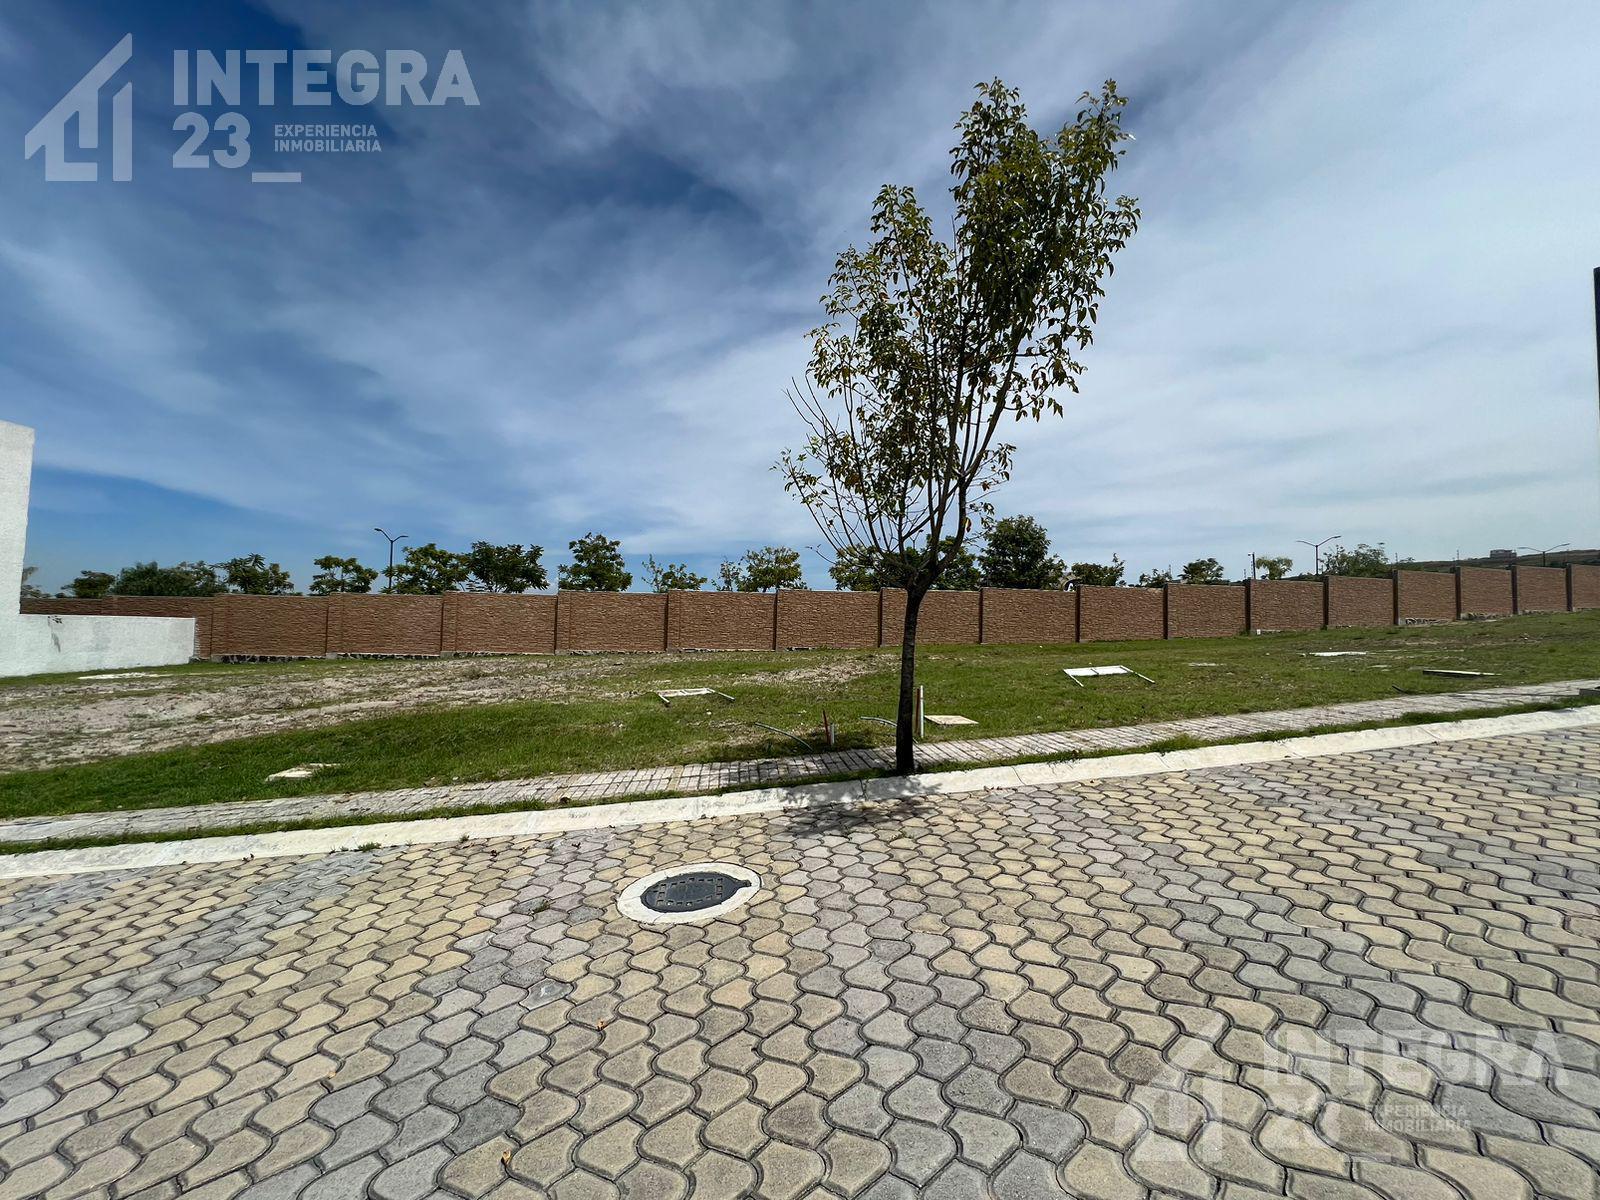 Terreno en Venta Parque Rodas, precio $6,500 x m2, escrituración inmediata, desde 162 m2